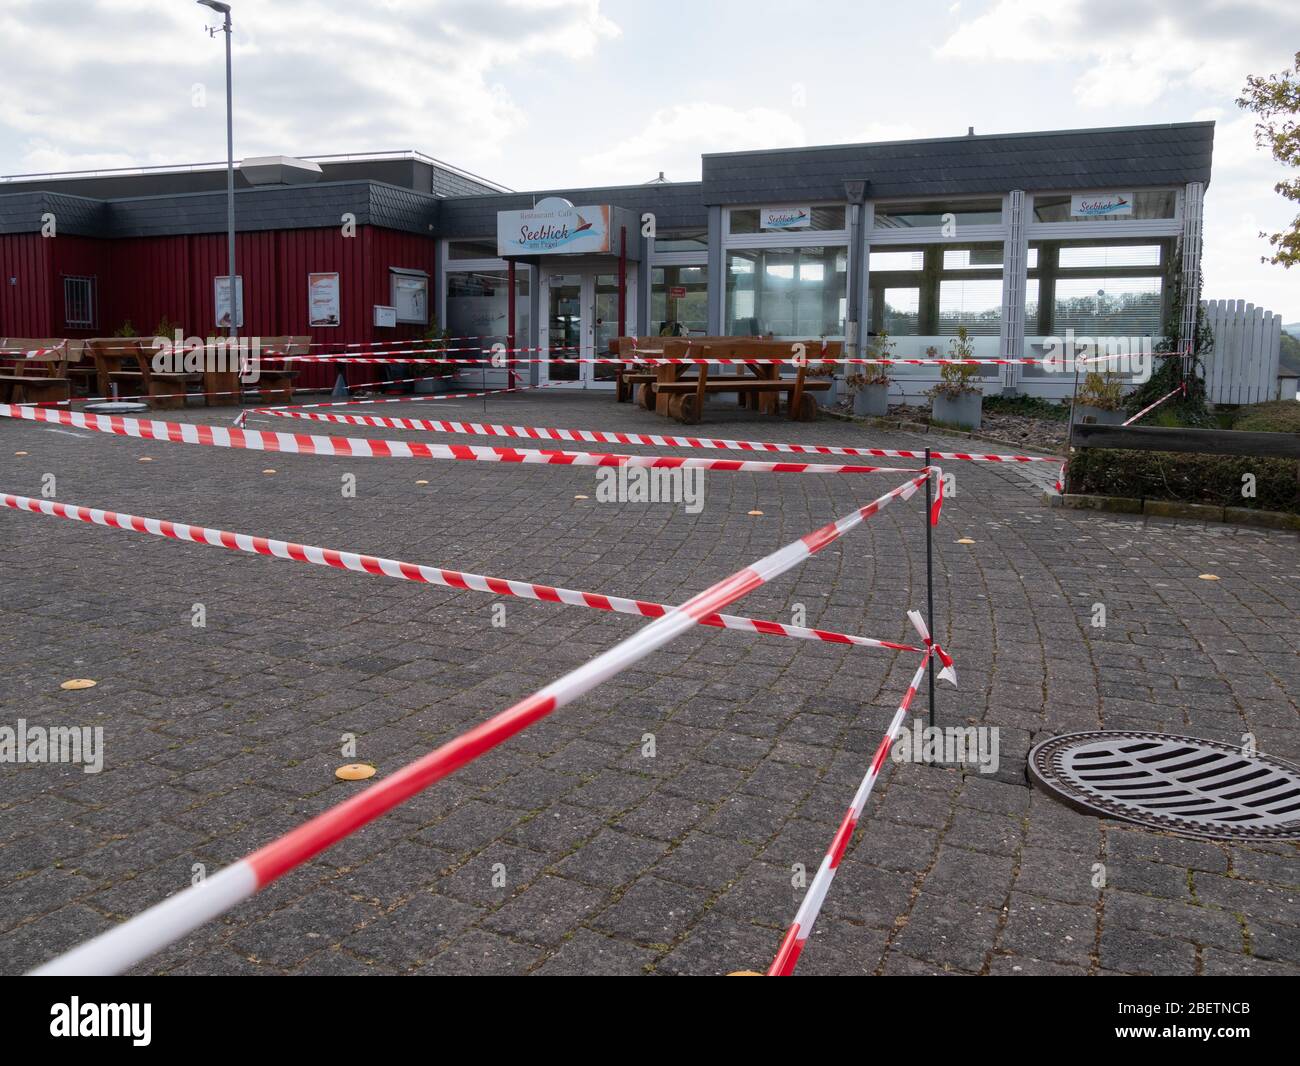 Tische und Bänke in den Außengastronomiebereichen sind während der Corona-Pandemie in Heimbach, Eifel, Deutschland, geschlossen Stockfoto